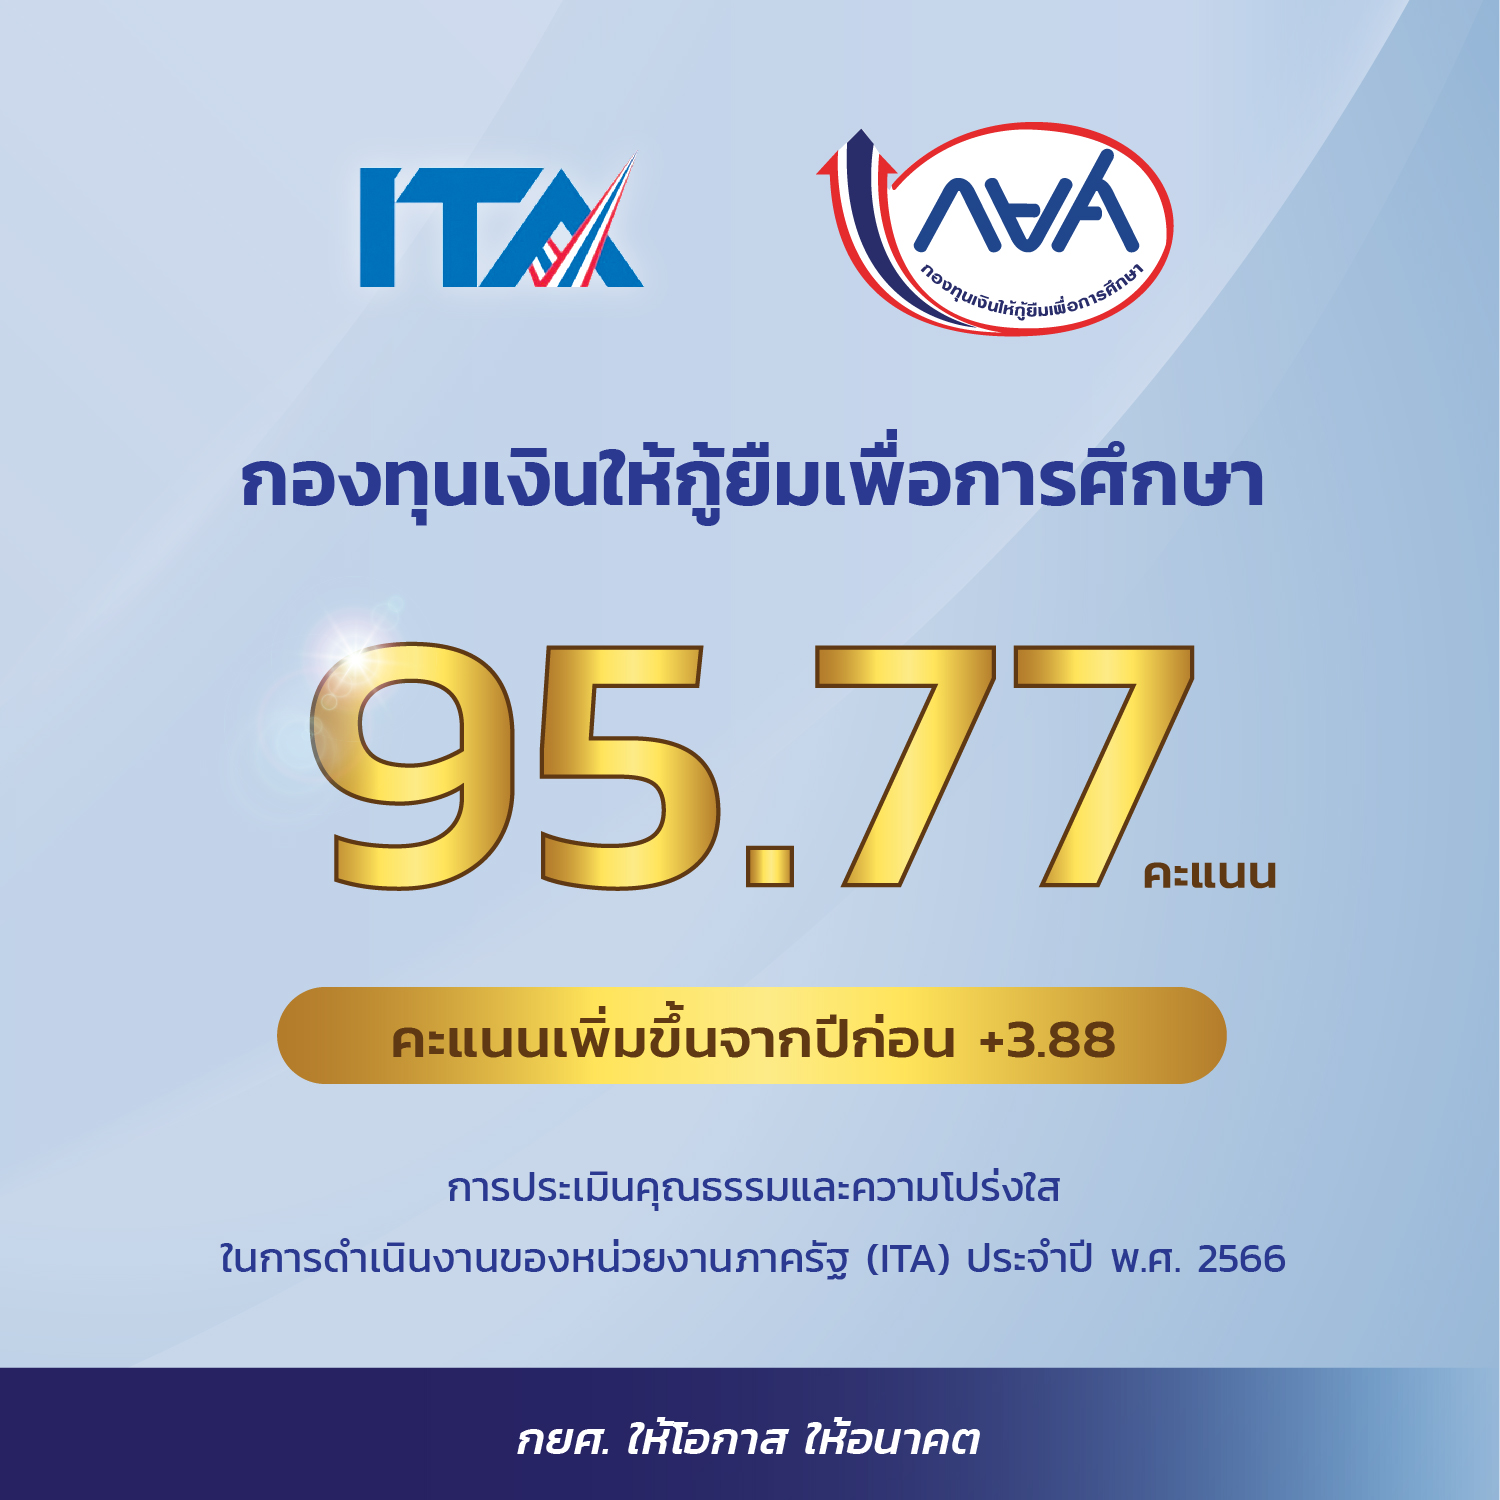 กยศ. ได้คะแนน ITA จาก ป.ป.ช. 95.77 สูงสุดของกลุ่มประเภทกองทุน  